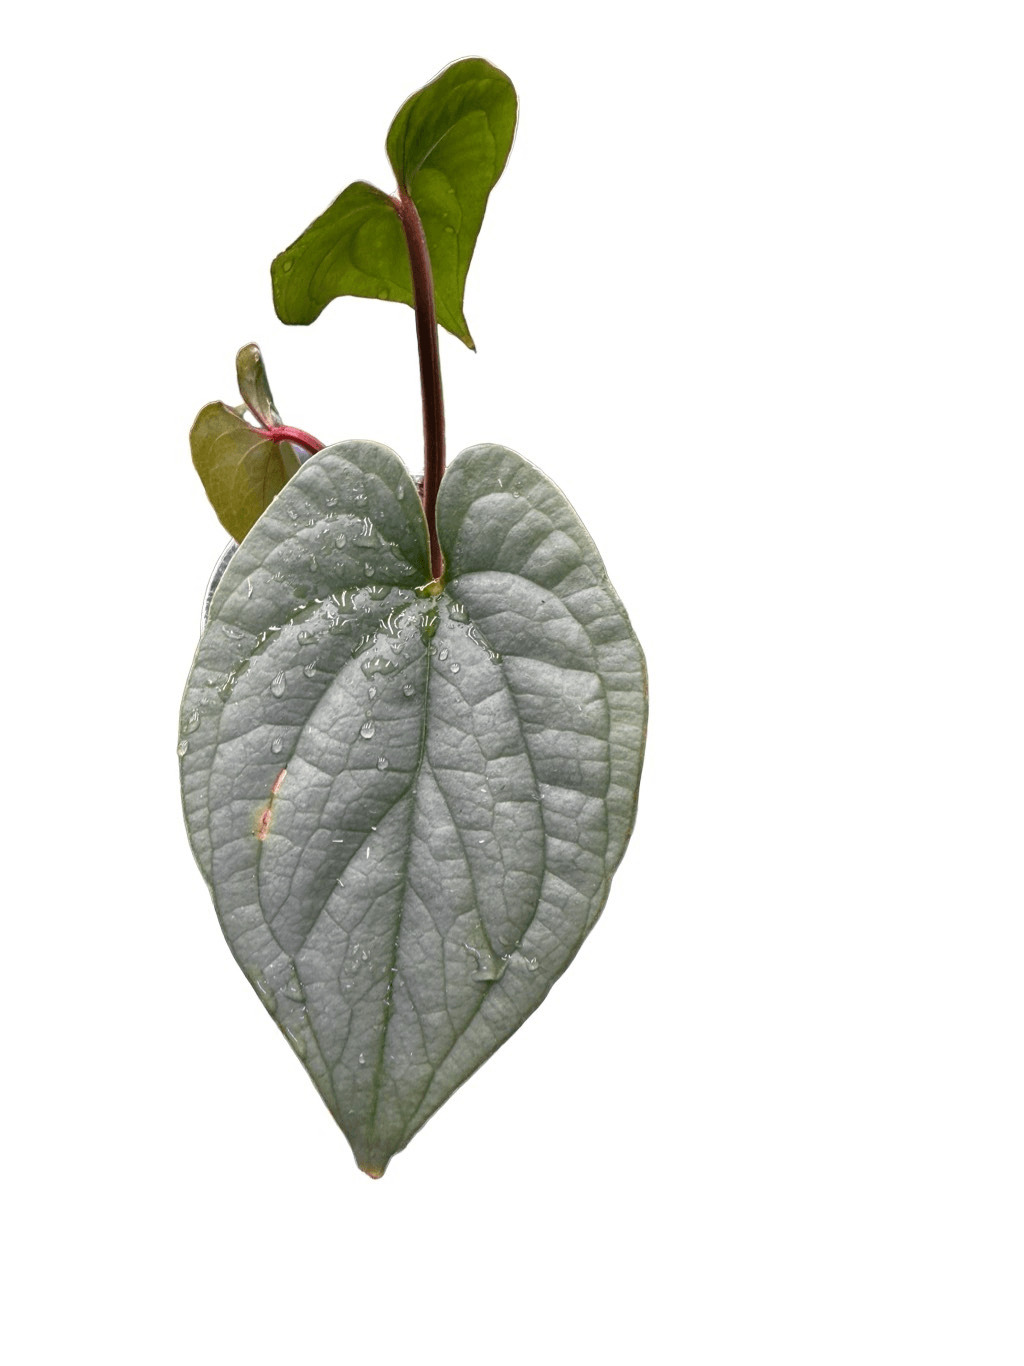 US United States Seller 3 Leaf Anthurium Sp. Silver Peru Live plant 3” Pot